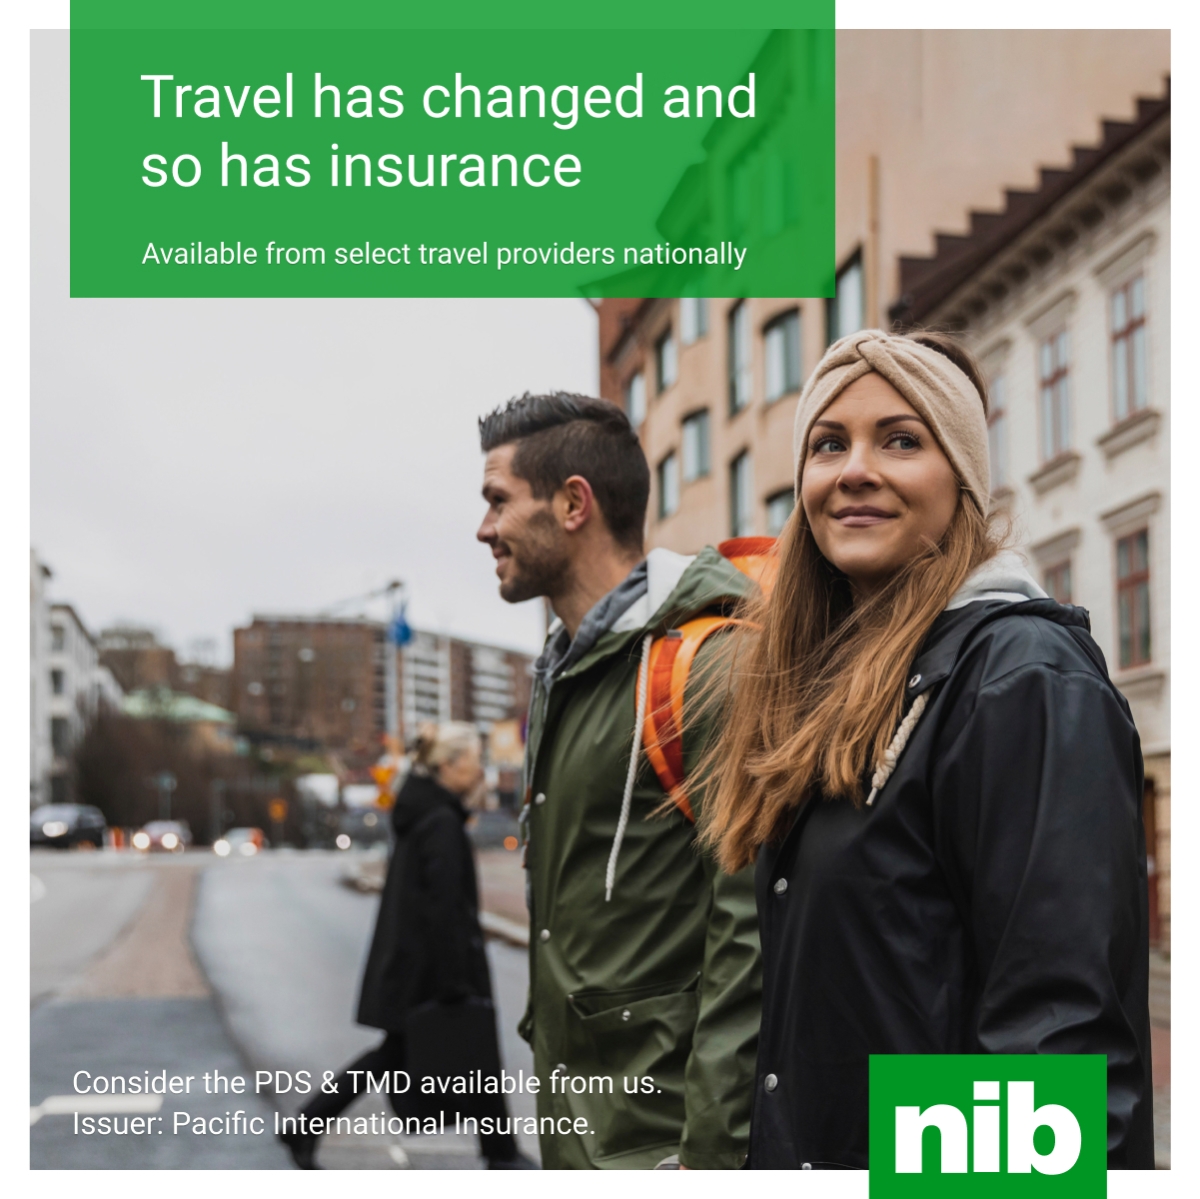 nib multi trip travel insurance